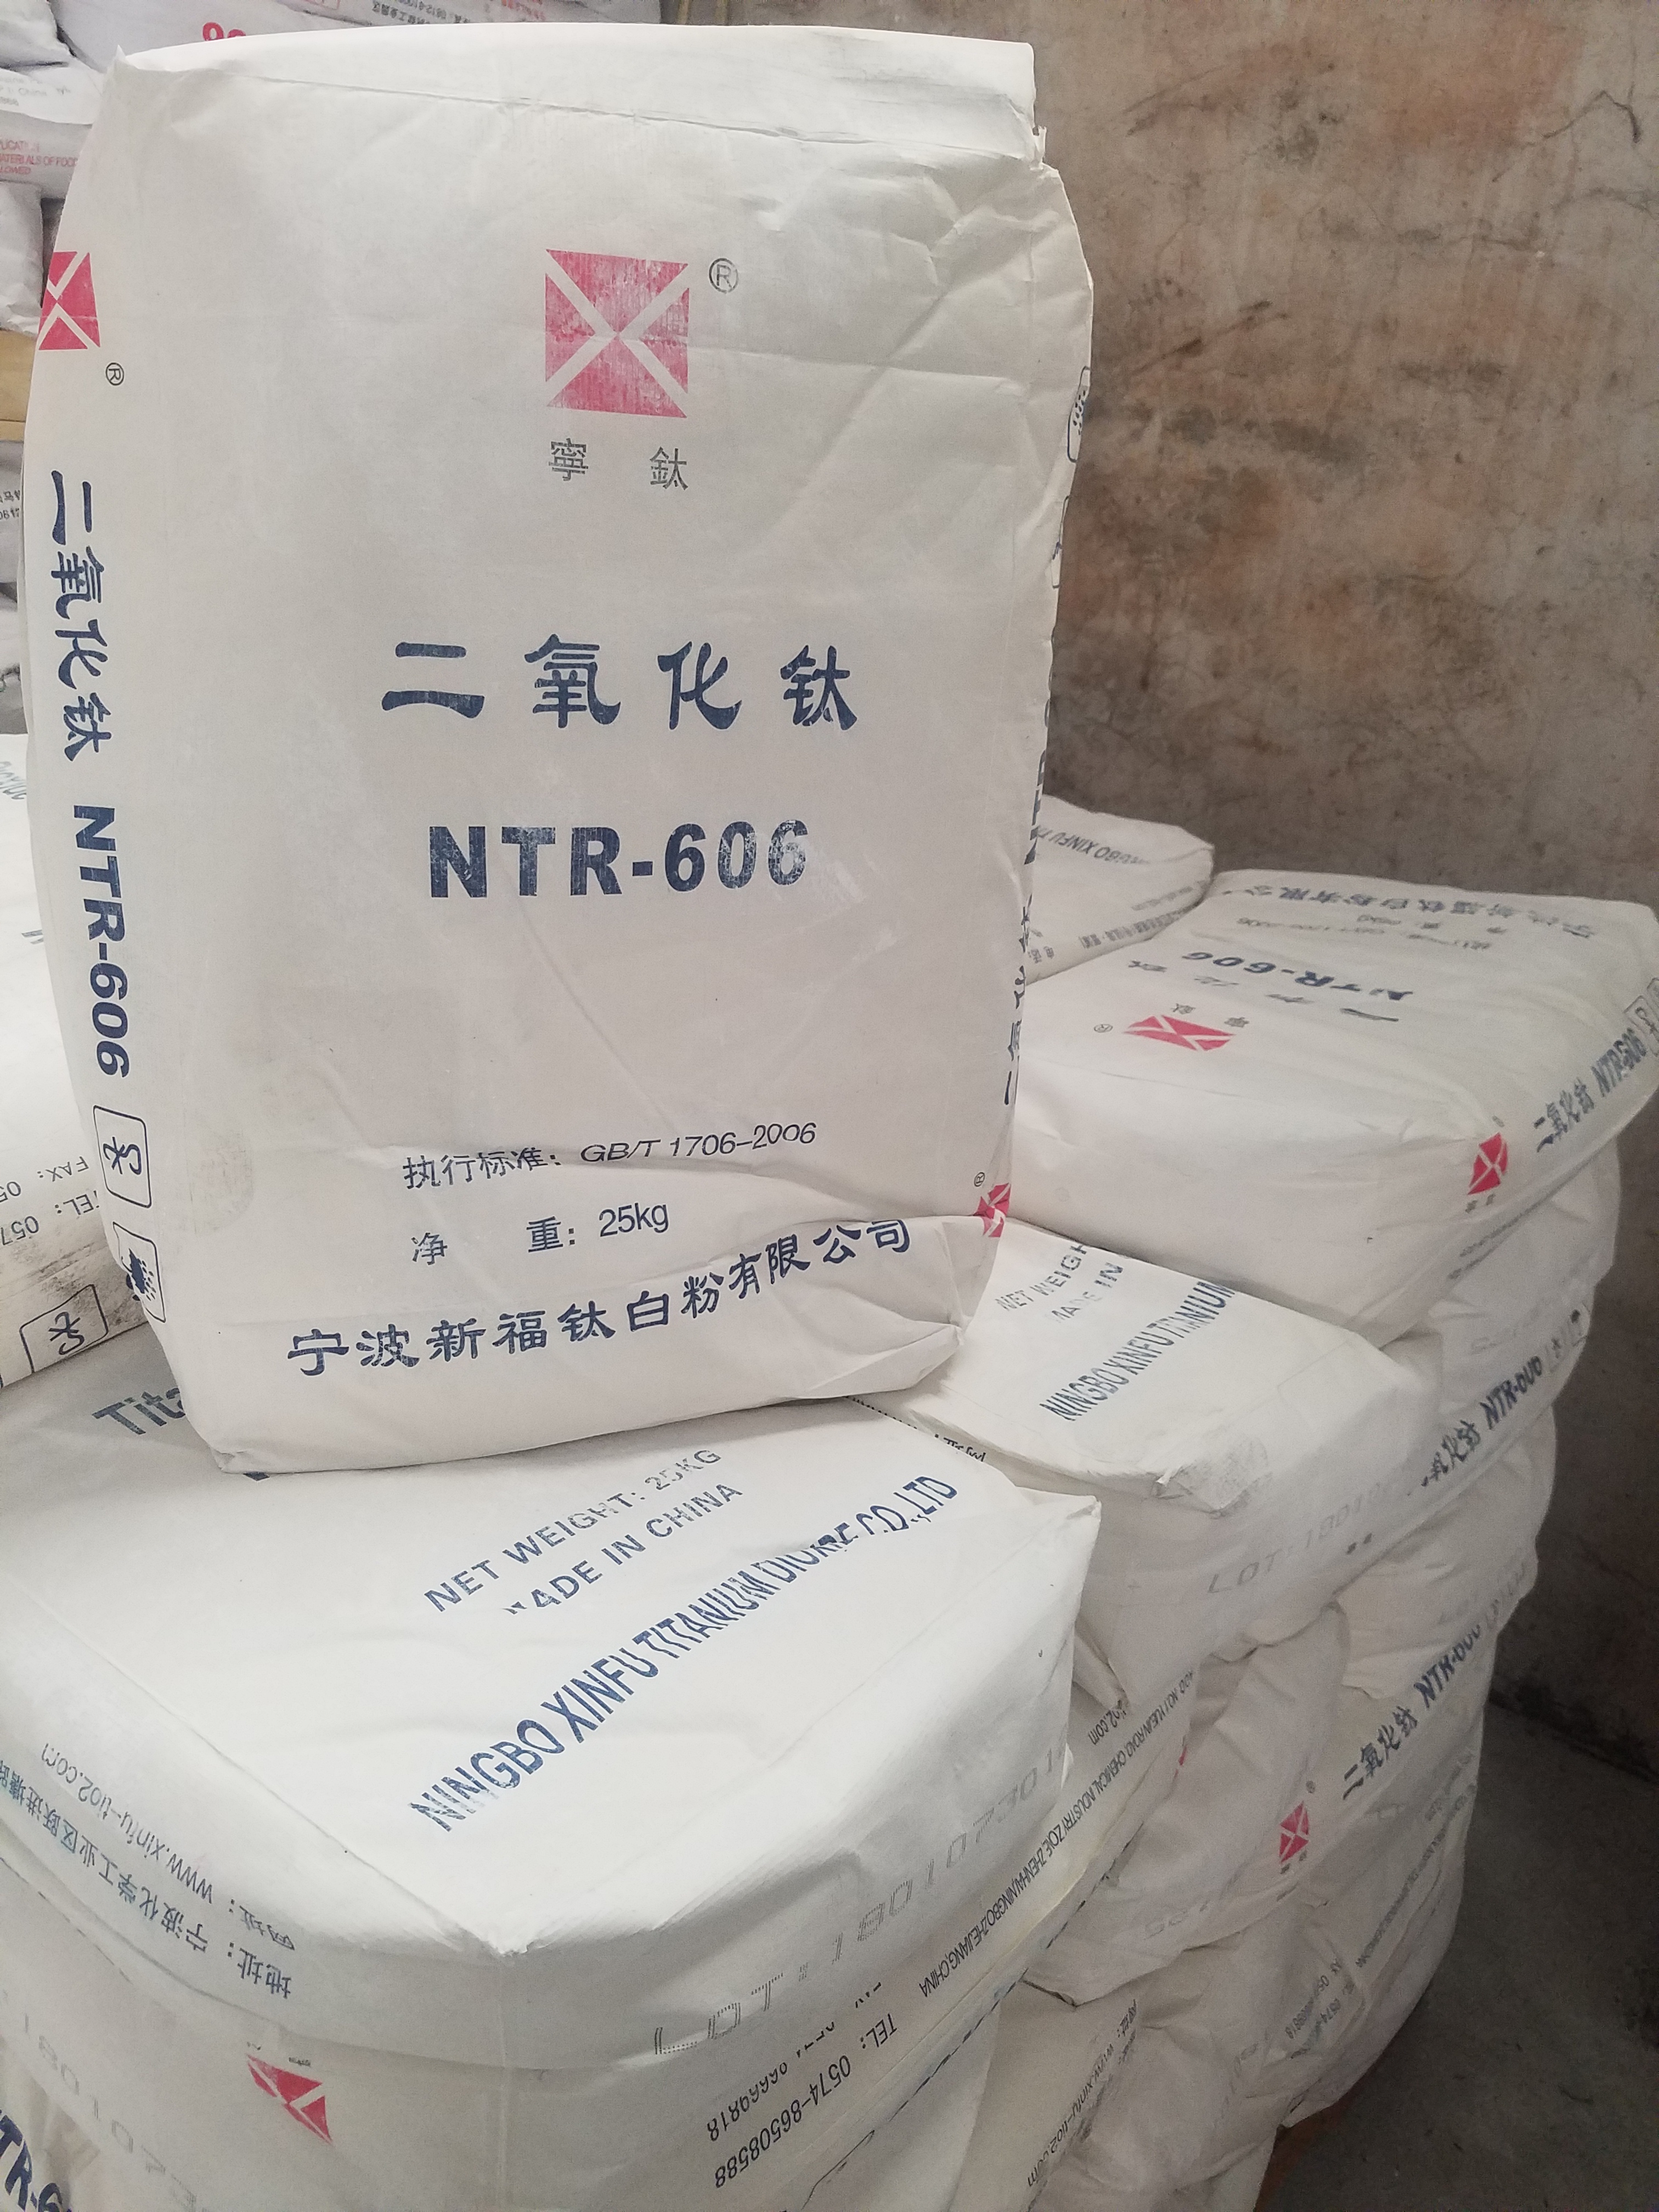 宁波新福钛业NTR-606金红石型钛白粉塑料涂料通用型钛白粉（通用型）